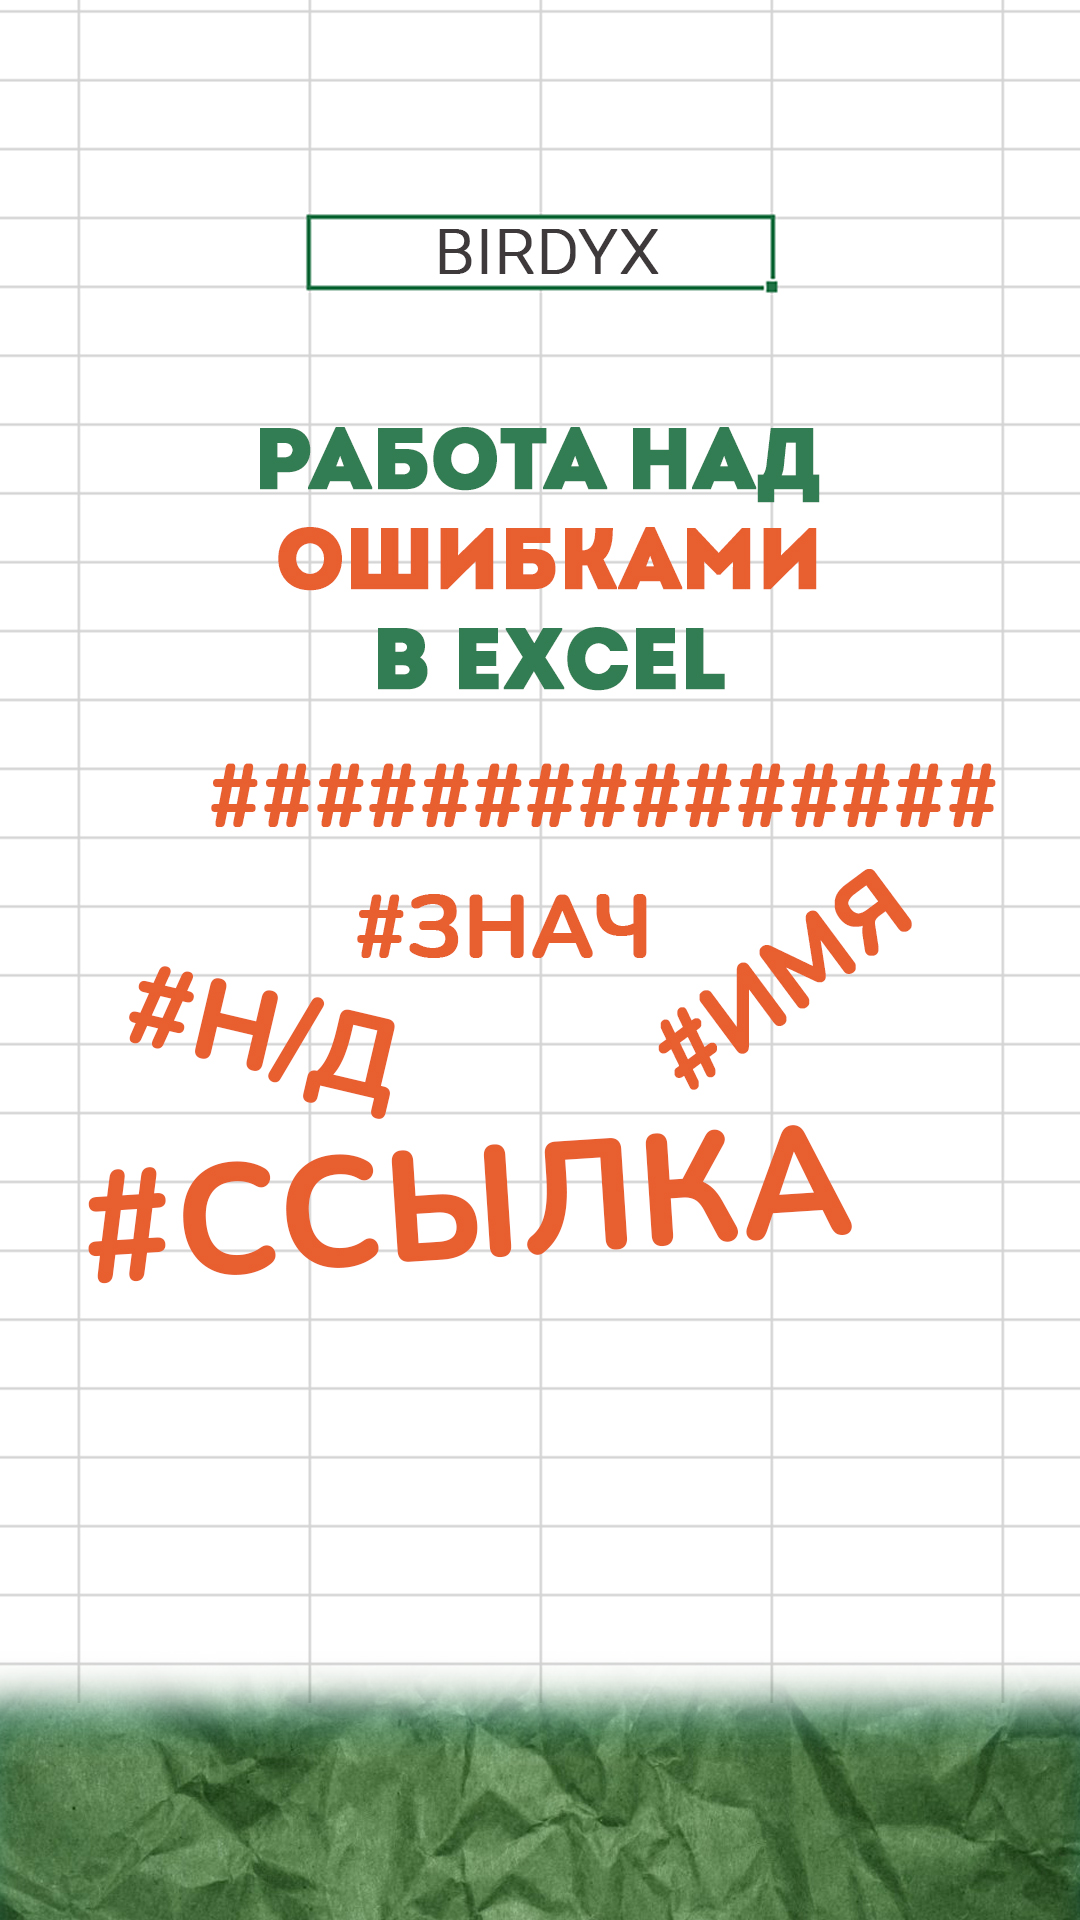 Excel: ошибки в эксель, что означают и как исправить #shorts #excel #эксель #excelобучение #ошибки